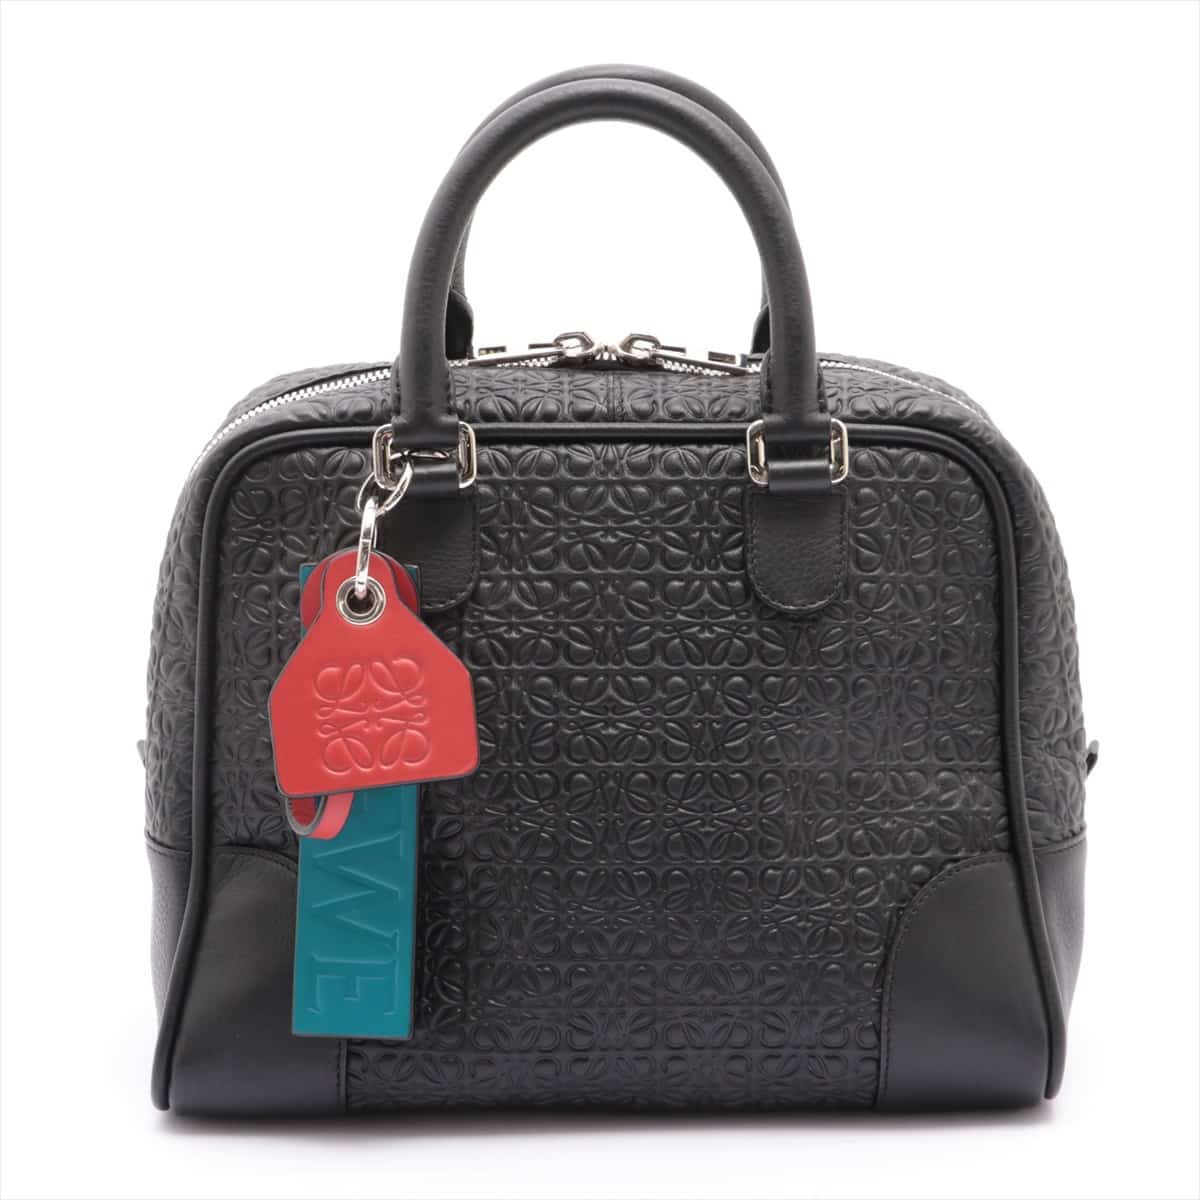 Loewe Anagram Amasona 75 Leather 2way handbag Black